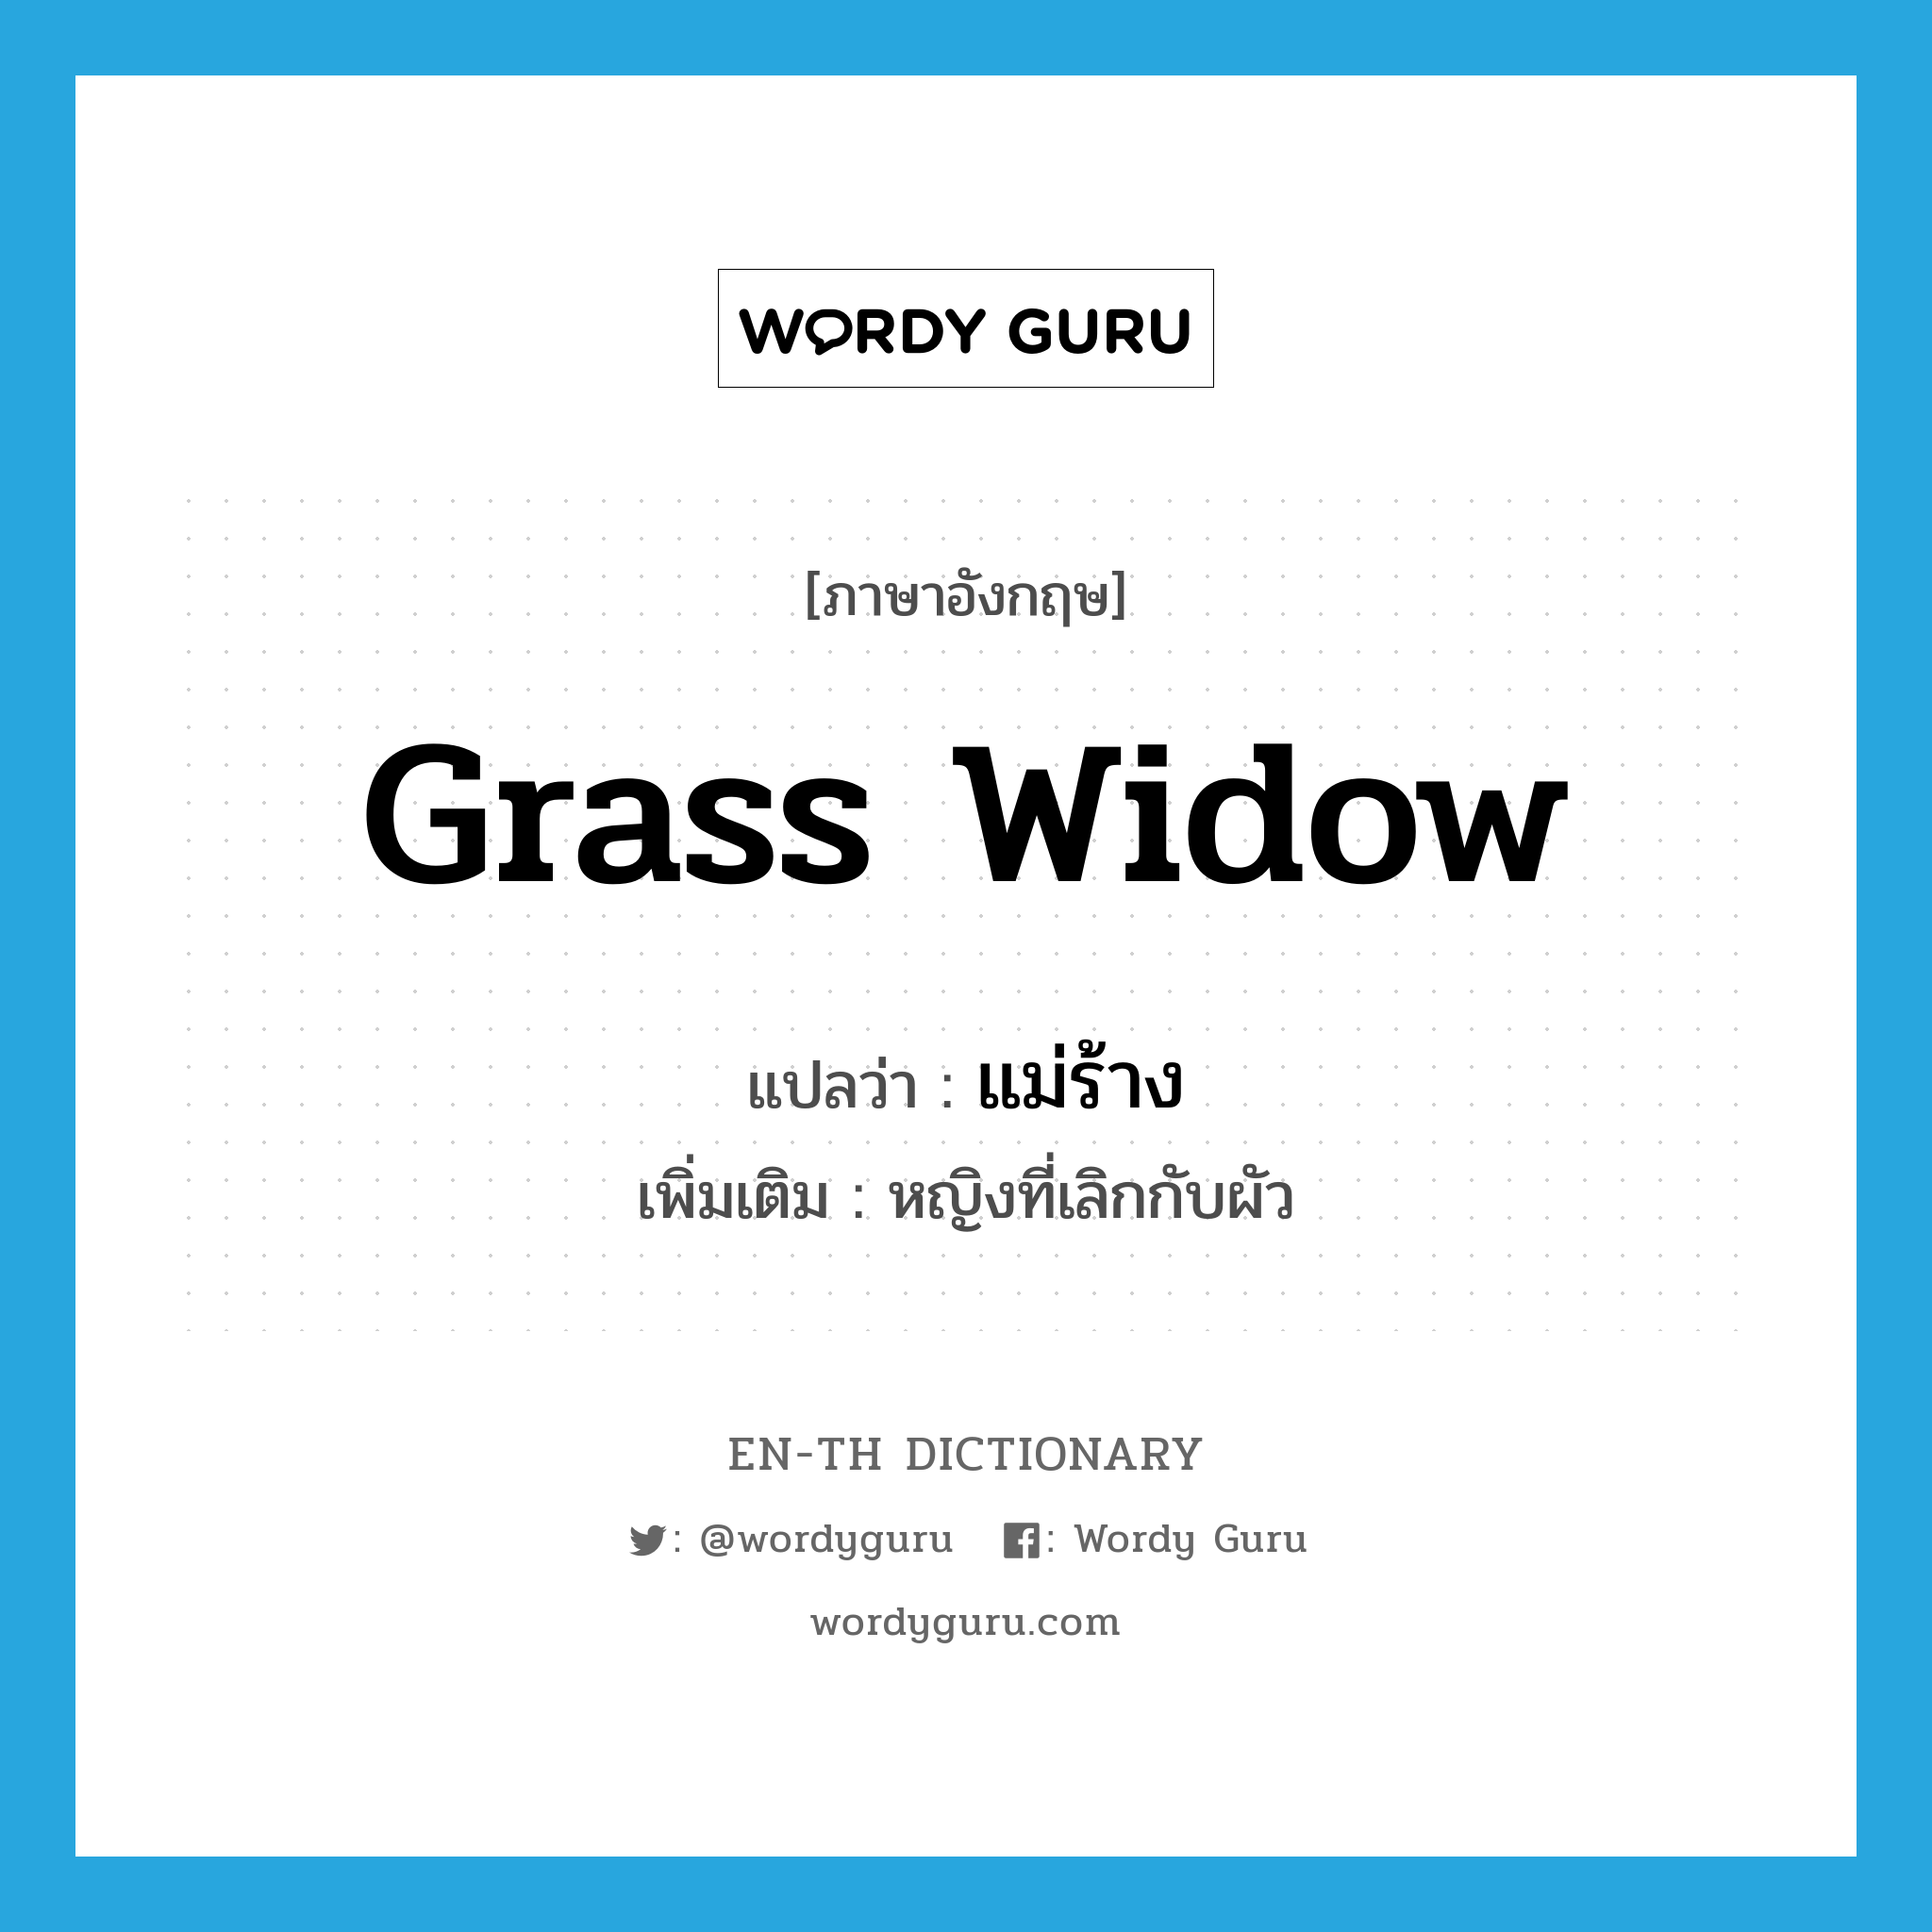 grass widow